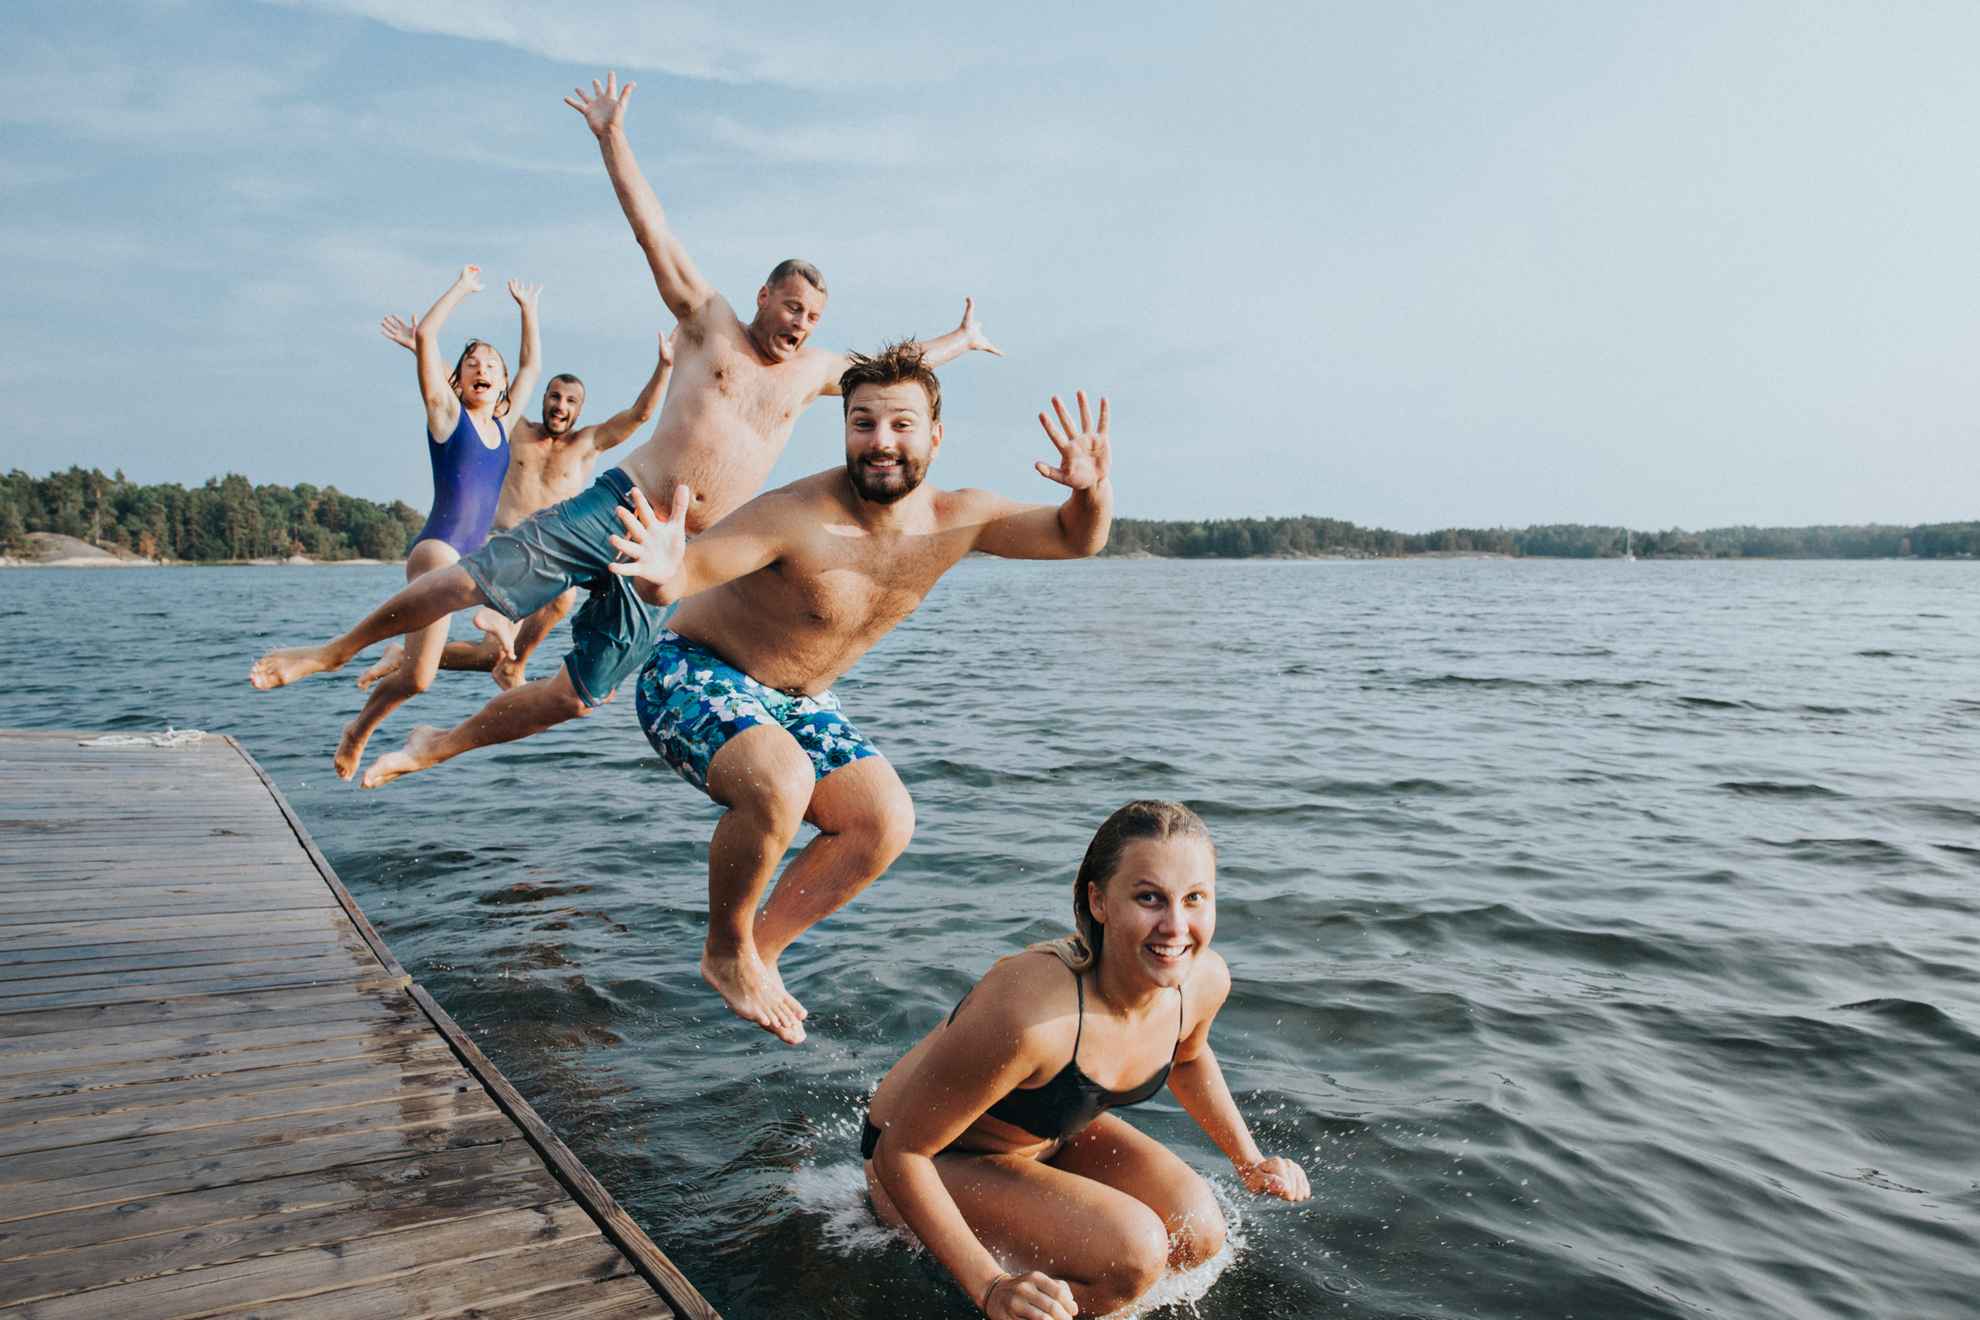 Vijf jonge mensen in badkleding springen vanaf een houten pier in een meer.